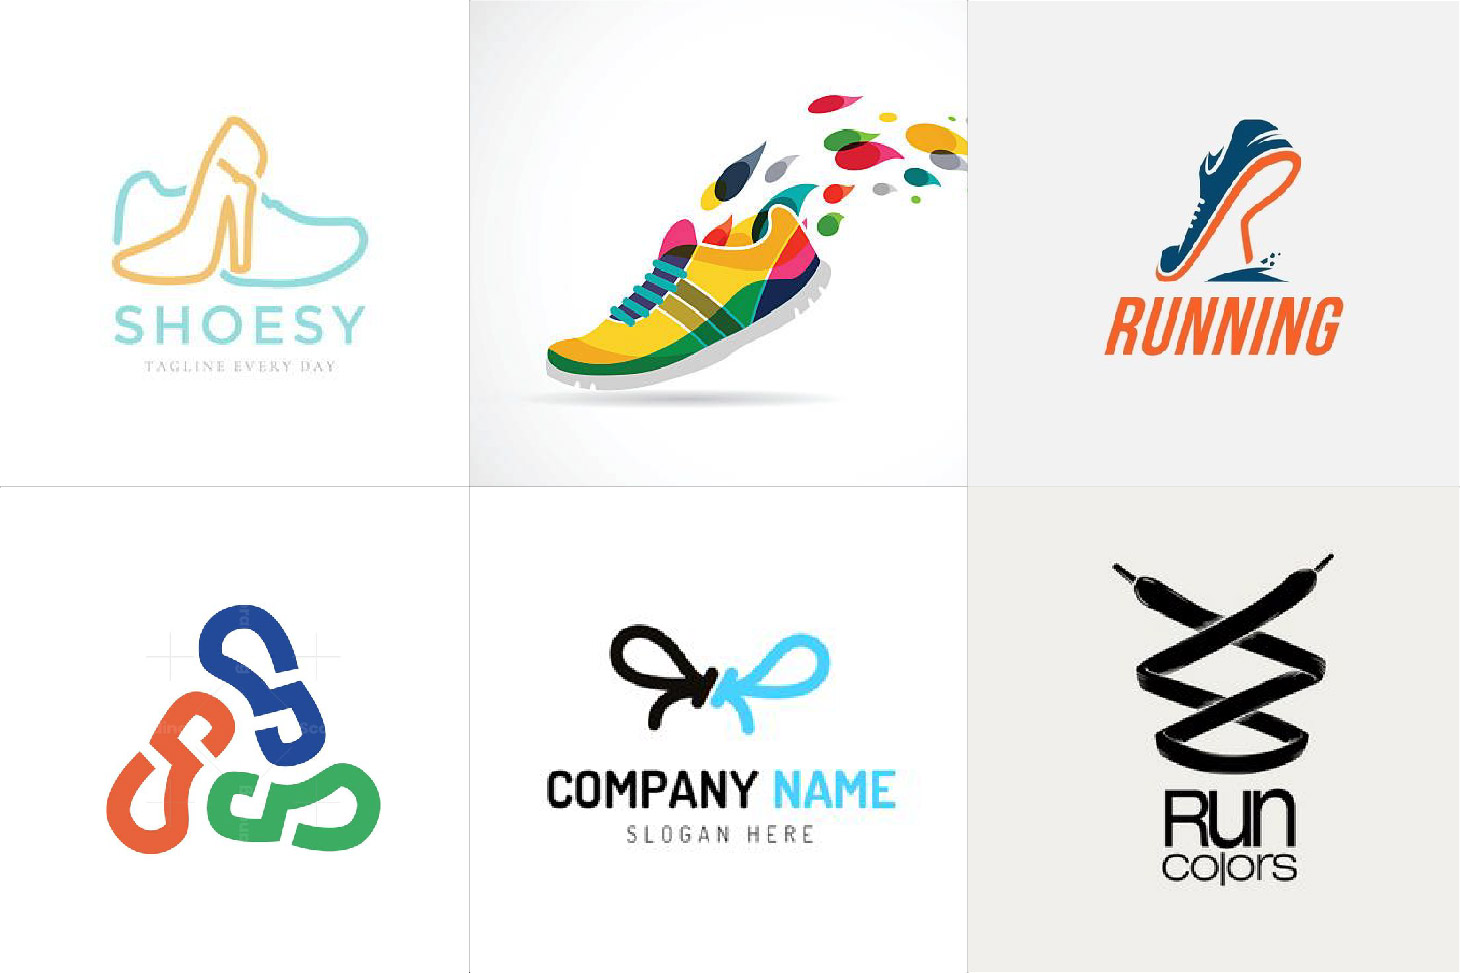 15+ mẫu thiết kế logo giày dép độc đáo nhất